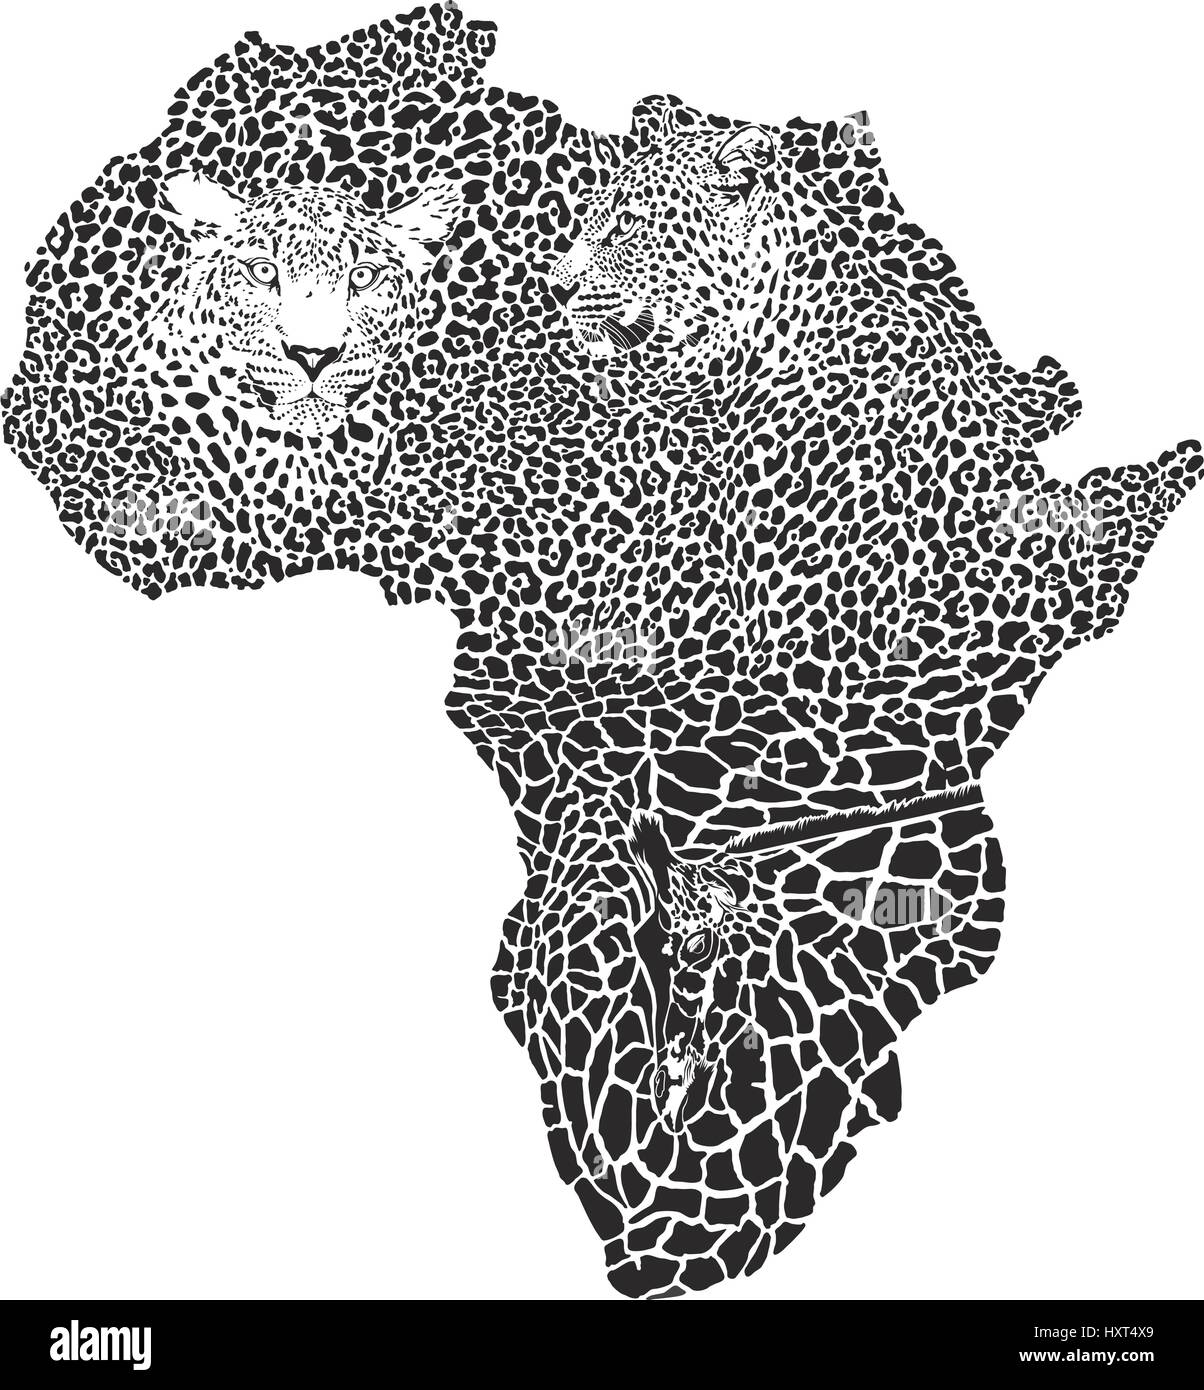 Leoparden auf der Afrika-Karte Stock Vektor